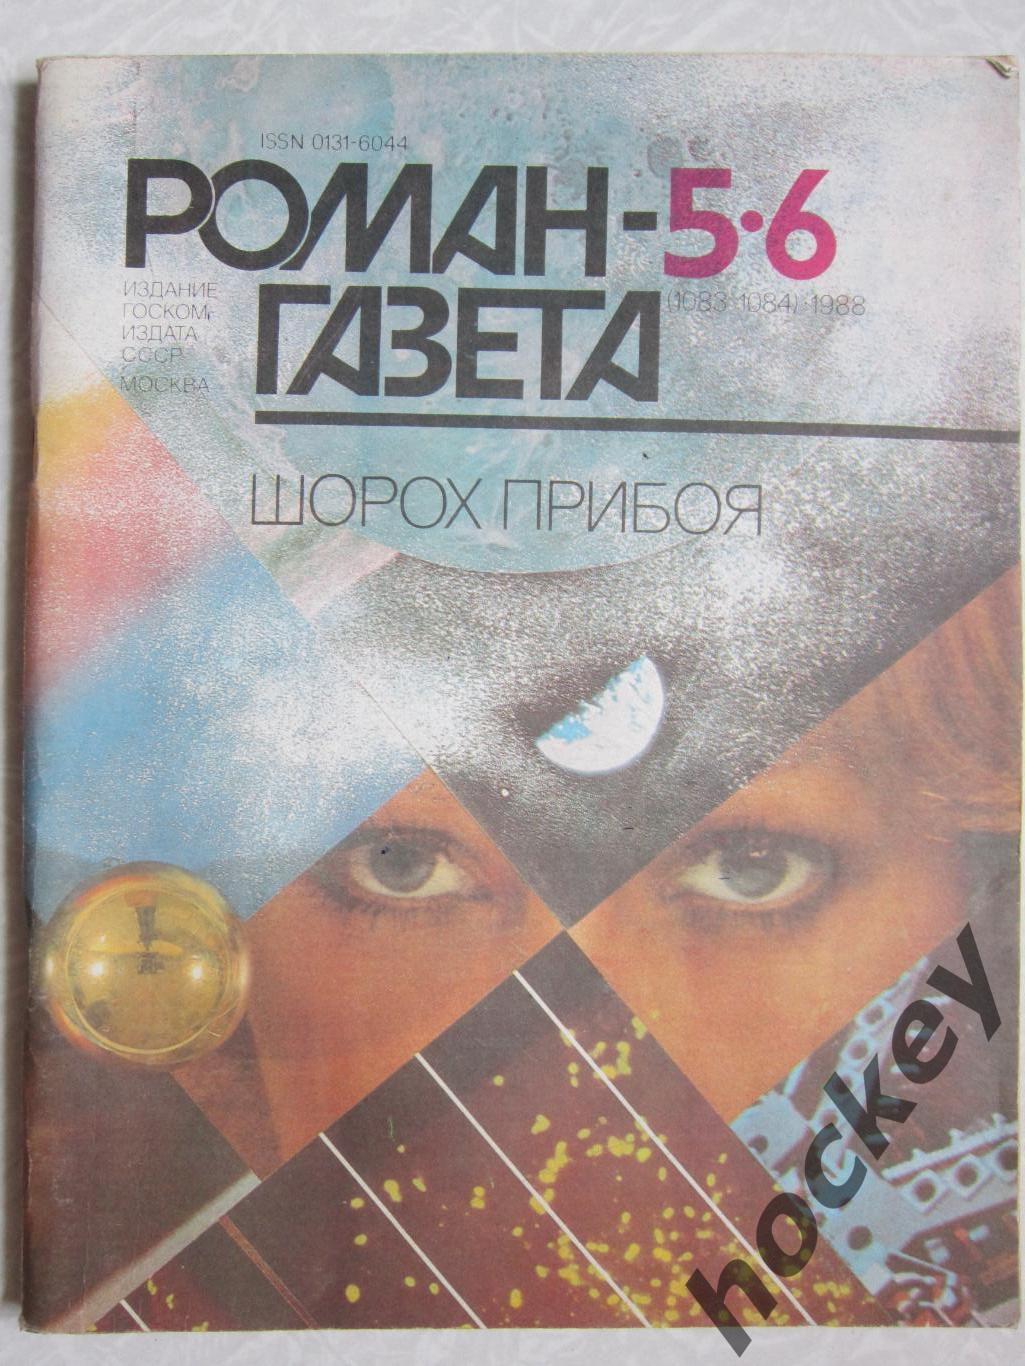 Роман-газета № 5,6.1988 год